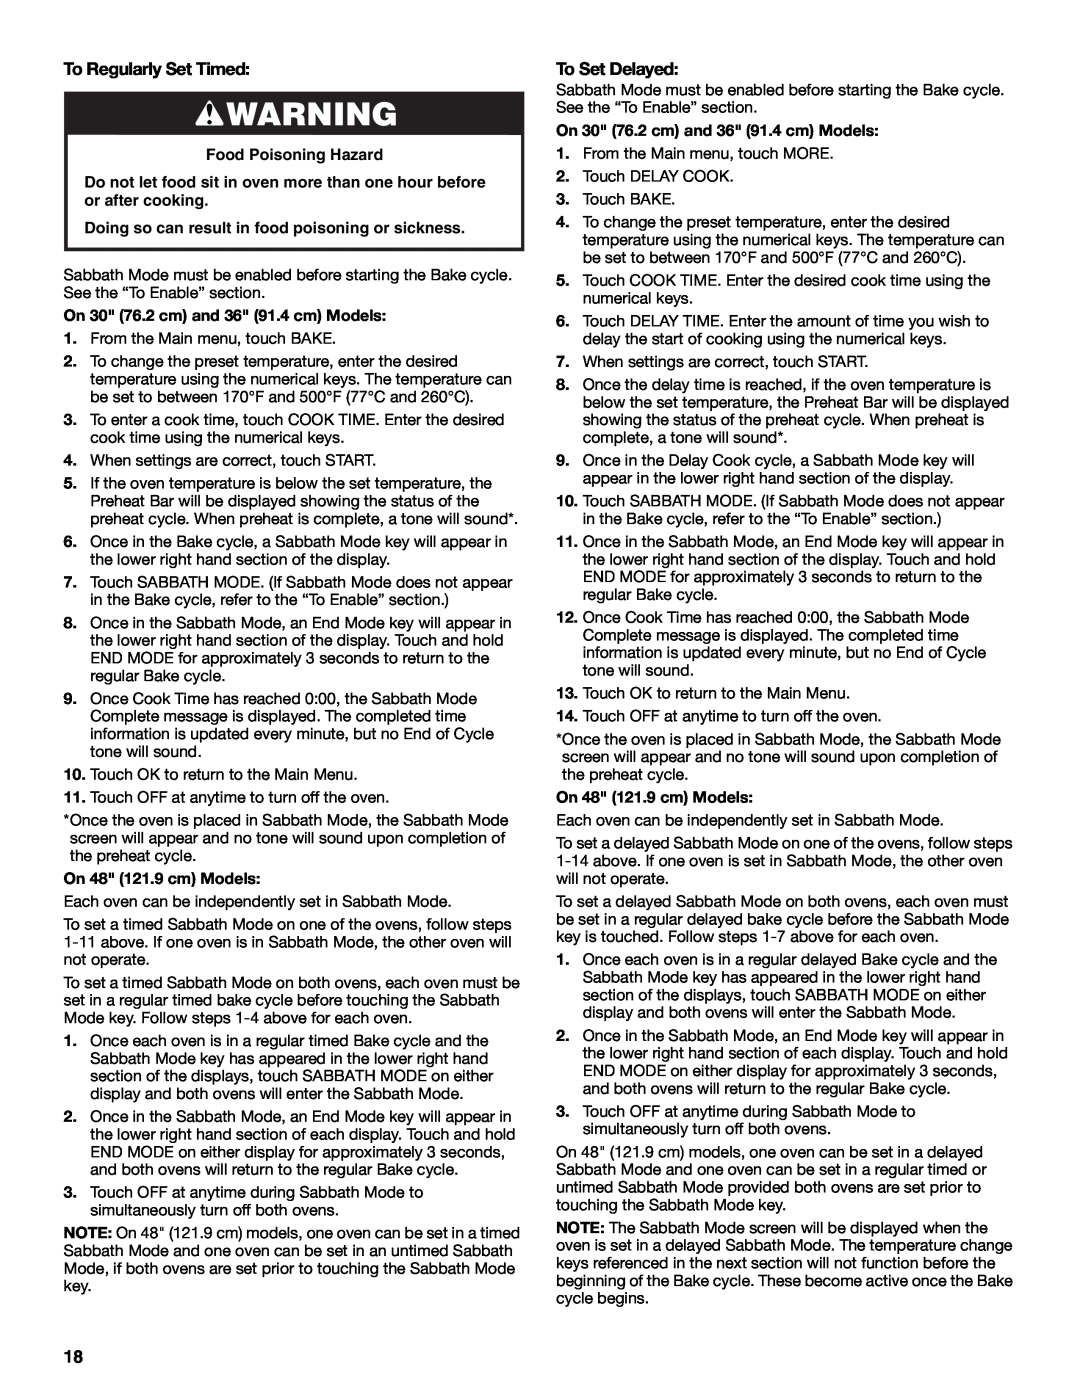 KitchenAid KDRU763.KDRU manual To Regularly Set Timed, To Set Delayed, Food Poisoning Hazard 